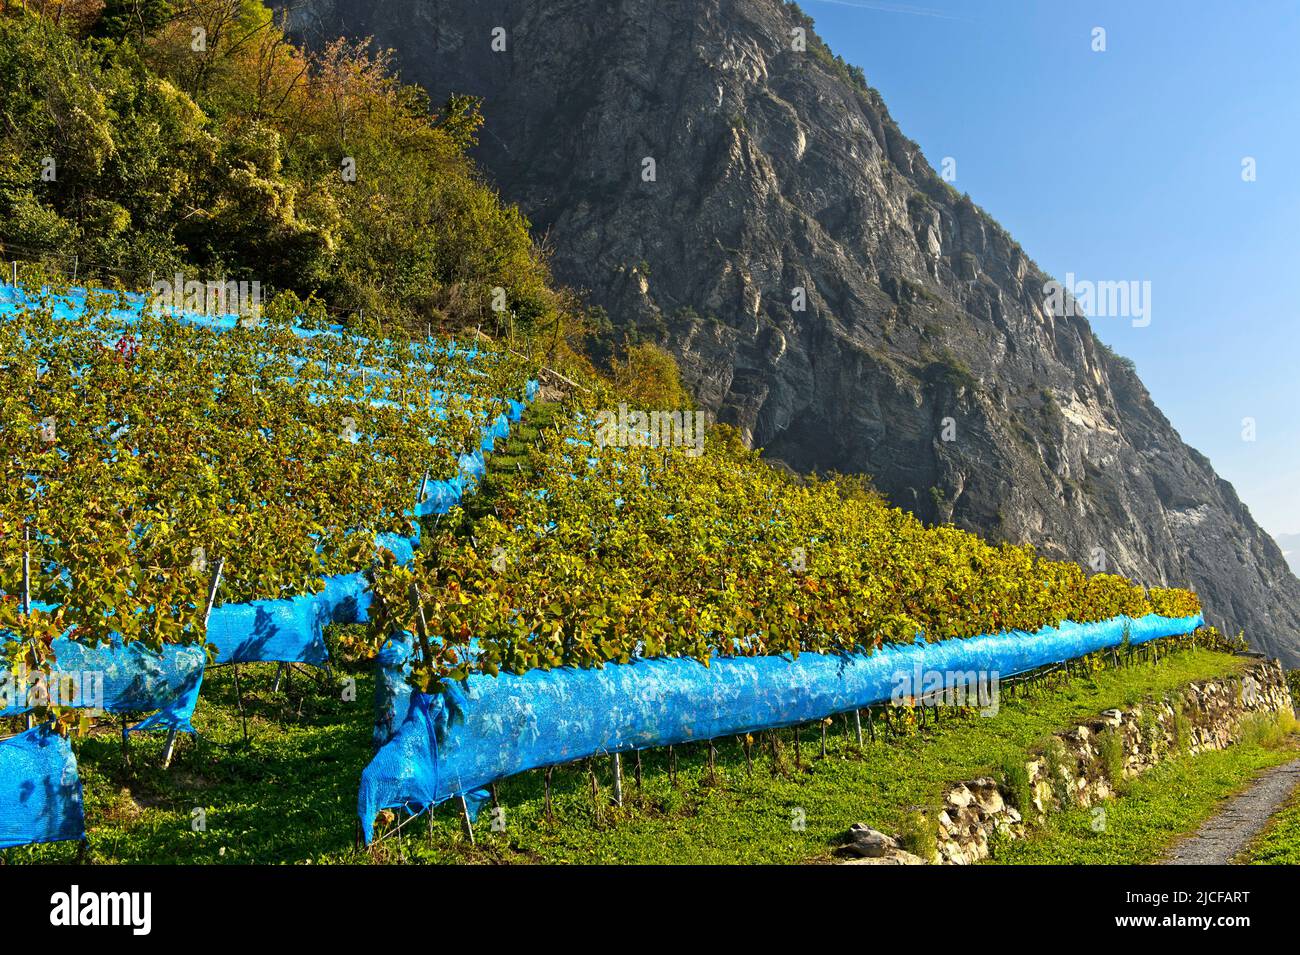 Les filets bleus de protection des oiseaux protègent contre l'alimentation des oiseaux dans un vignoble de la région viticole de Leytron, Valais, Suisse Banque D'Images